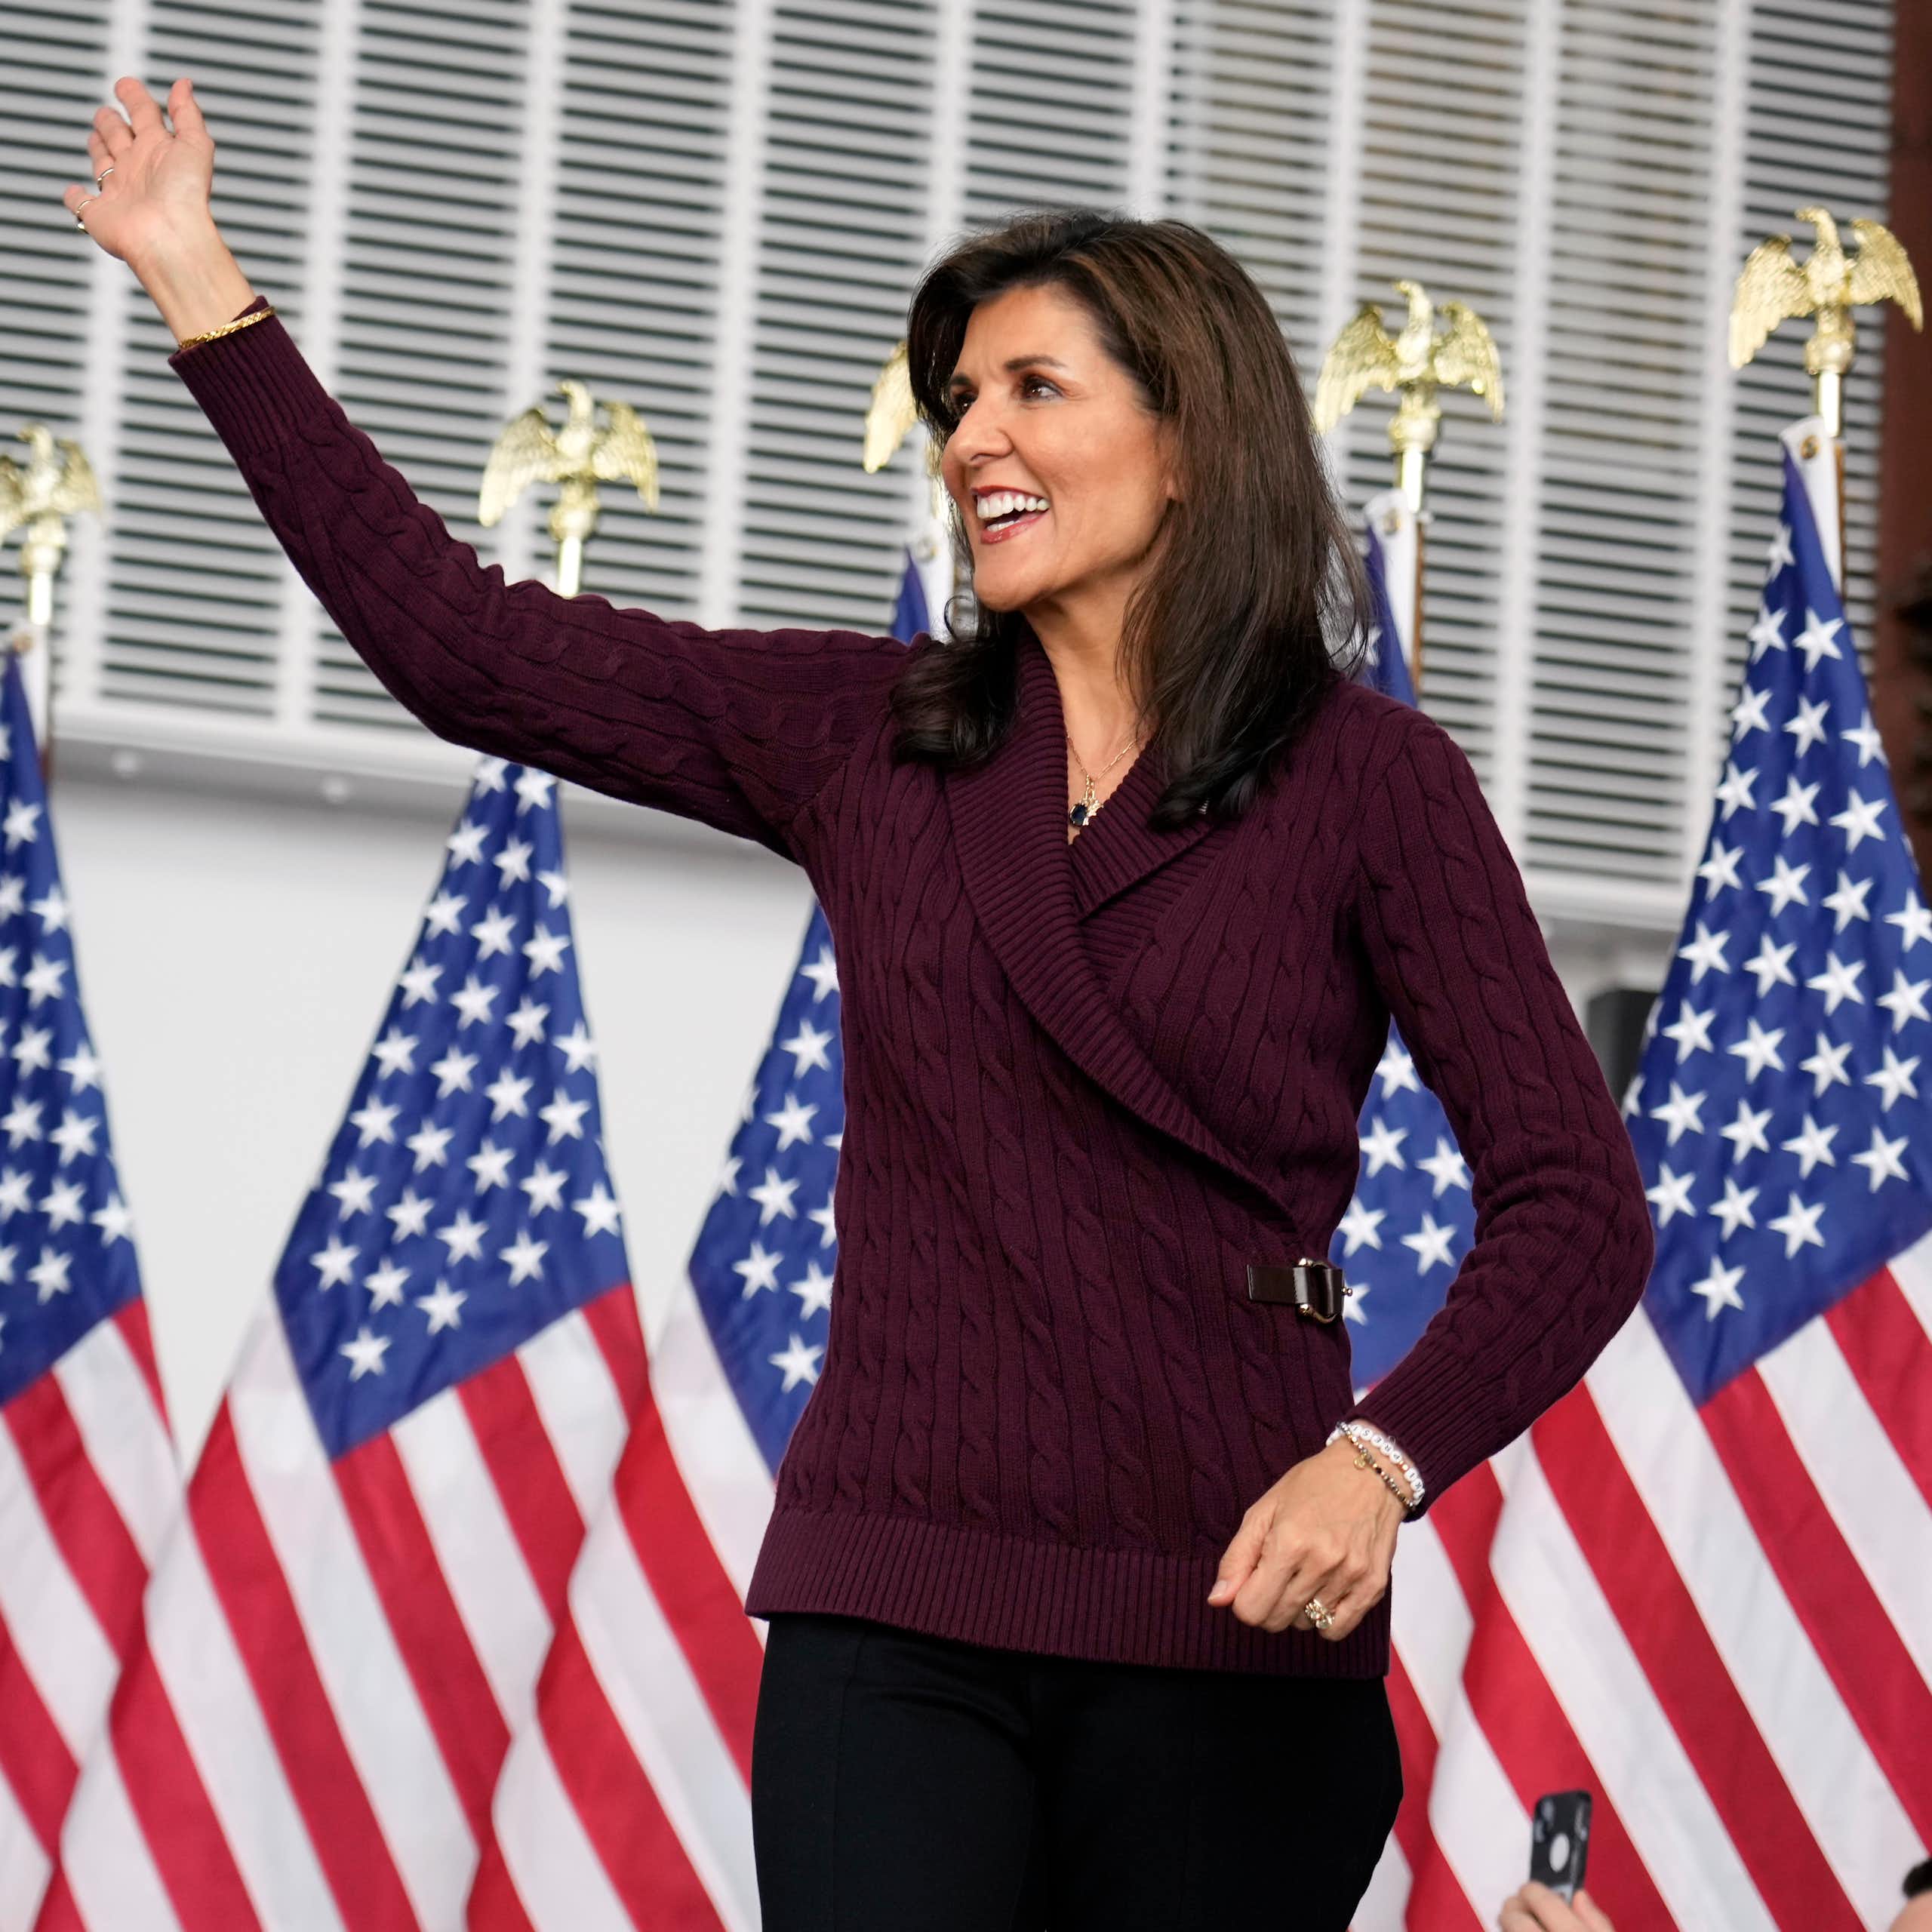 La candidate Nikki Haley se tient sur une tribune, avec des drapeaux américains en arrière-plan